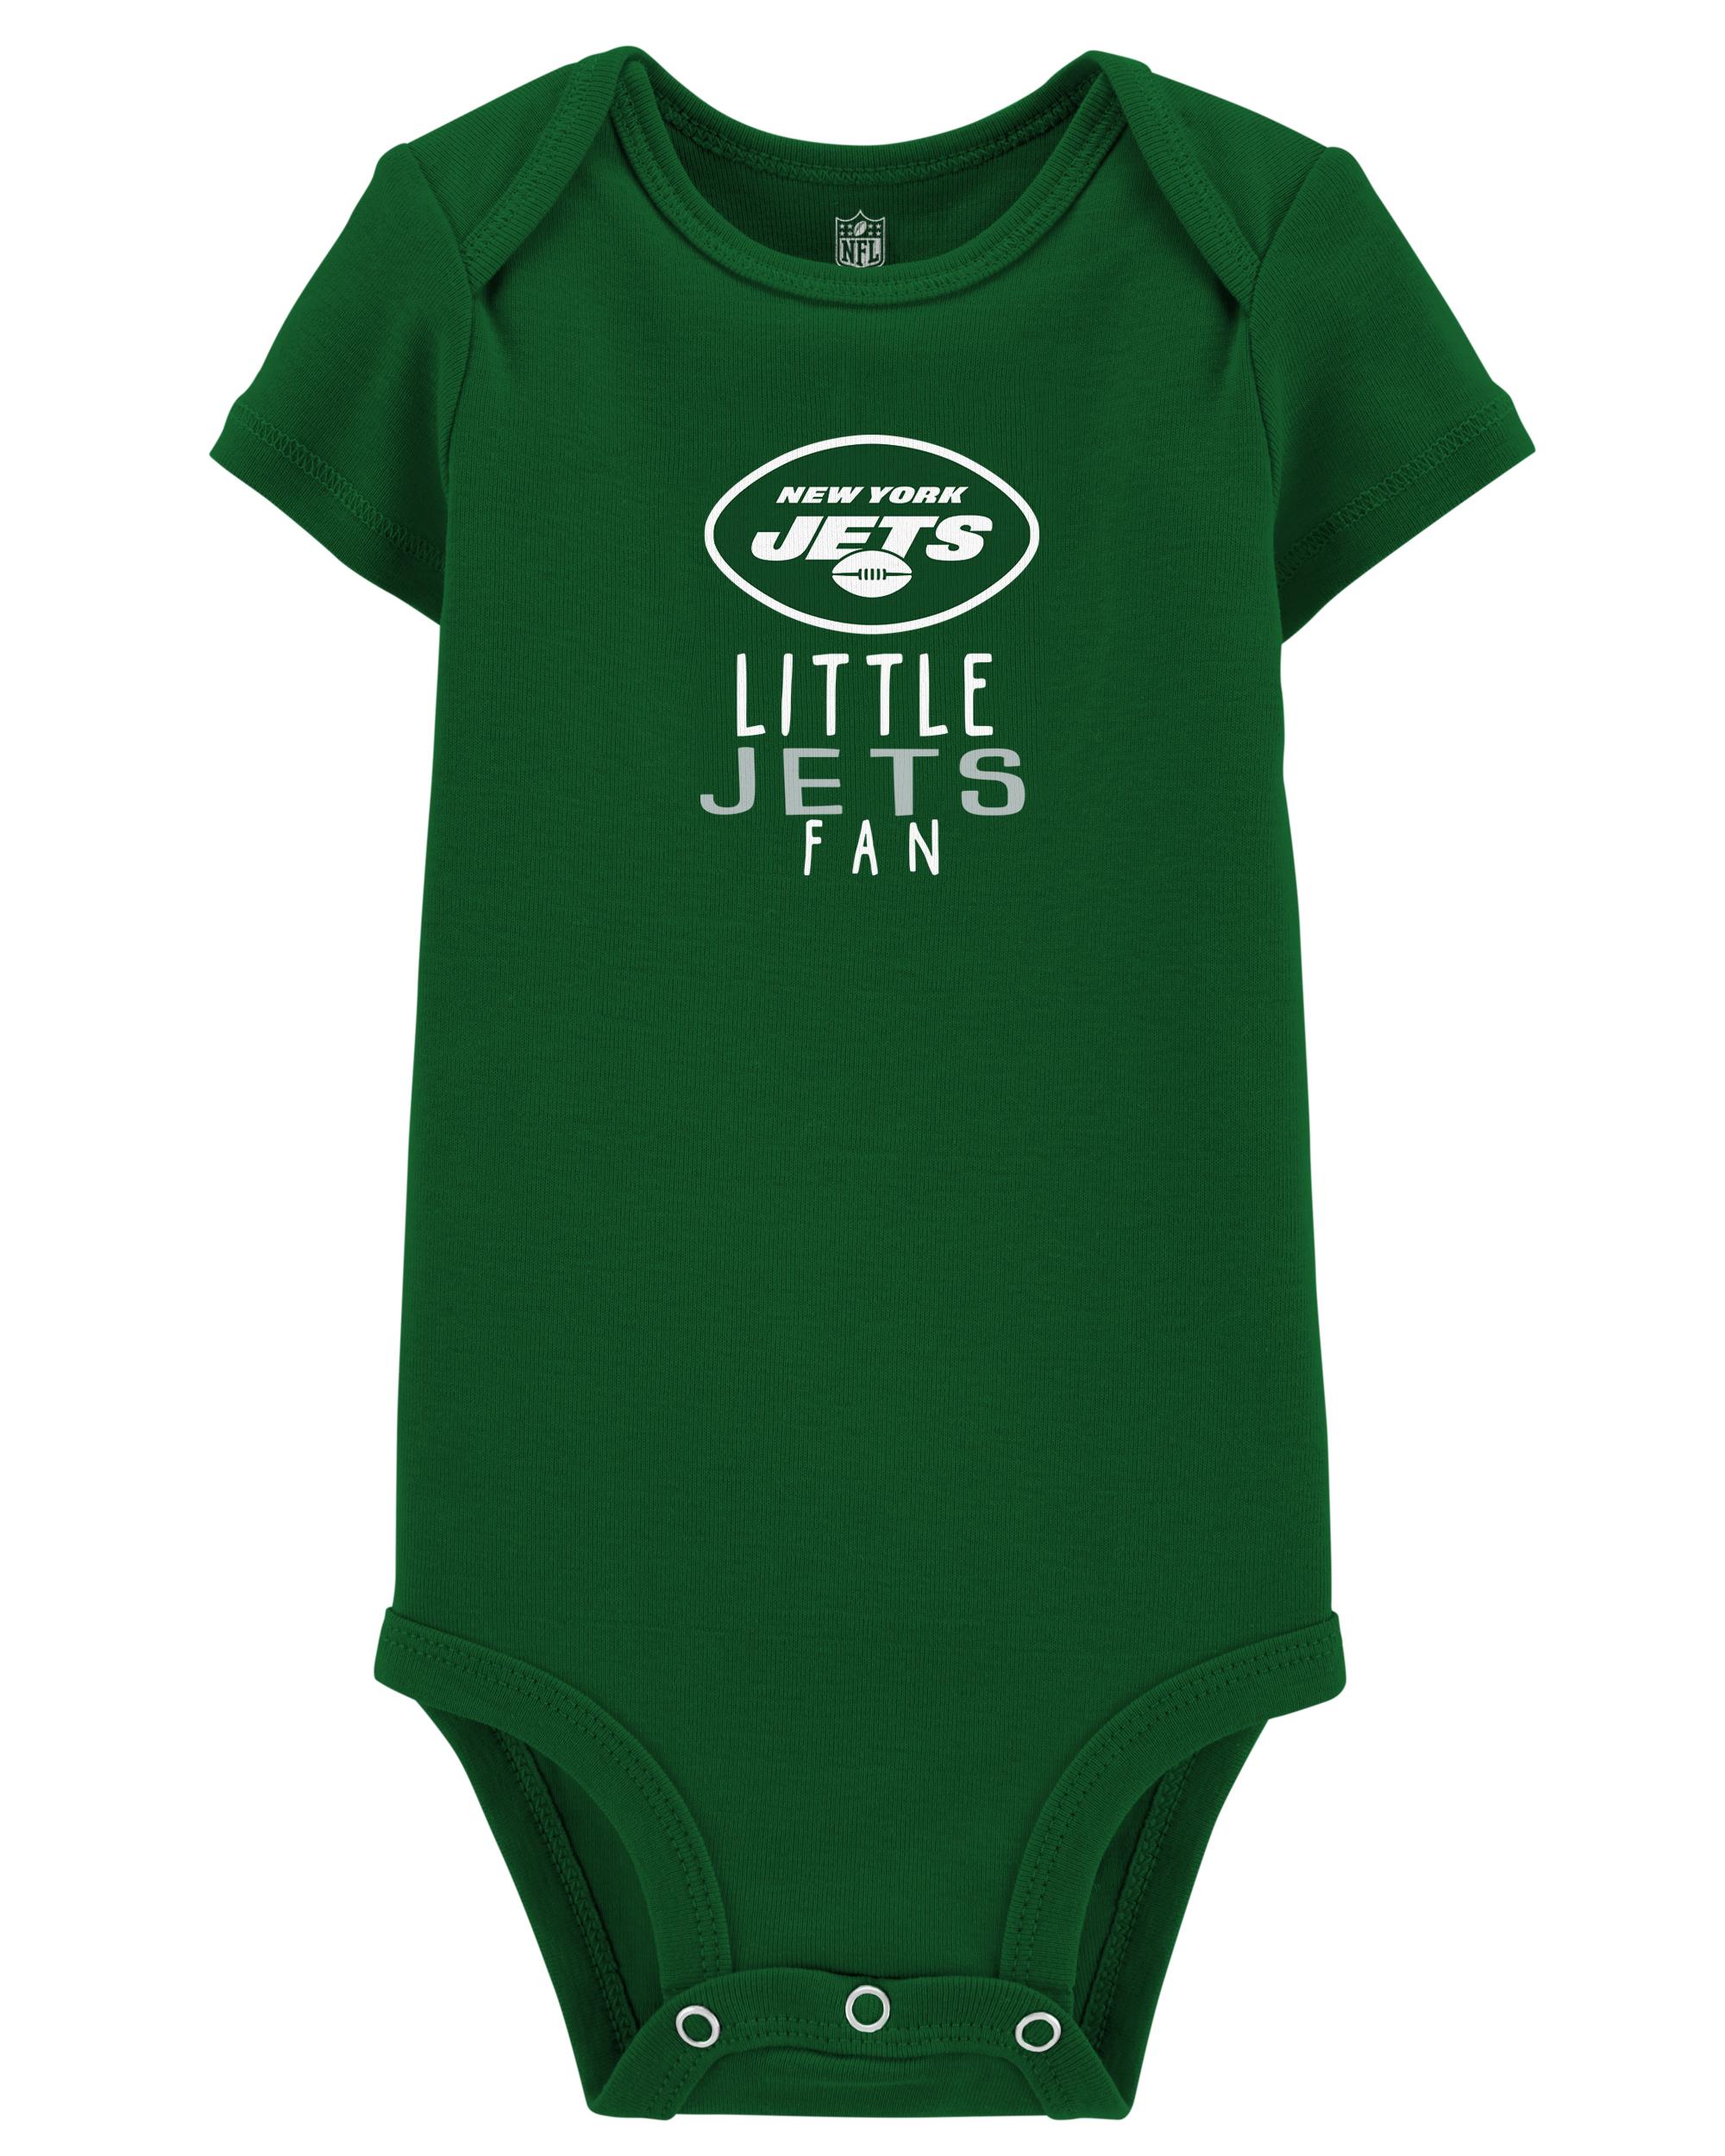 Baby NFL New York Jets Bodysuit